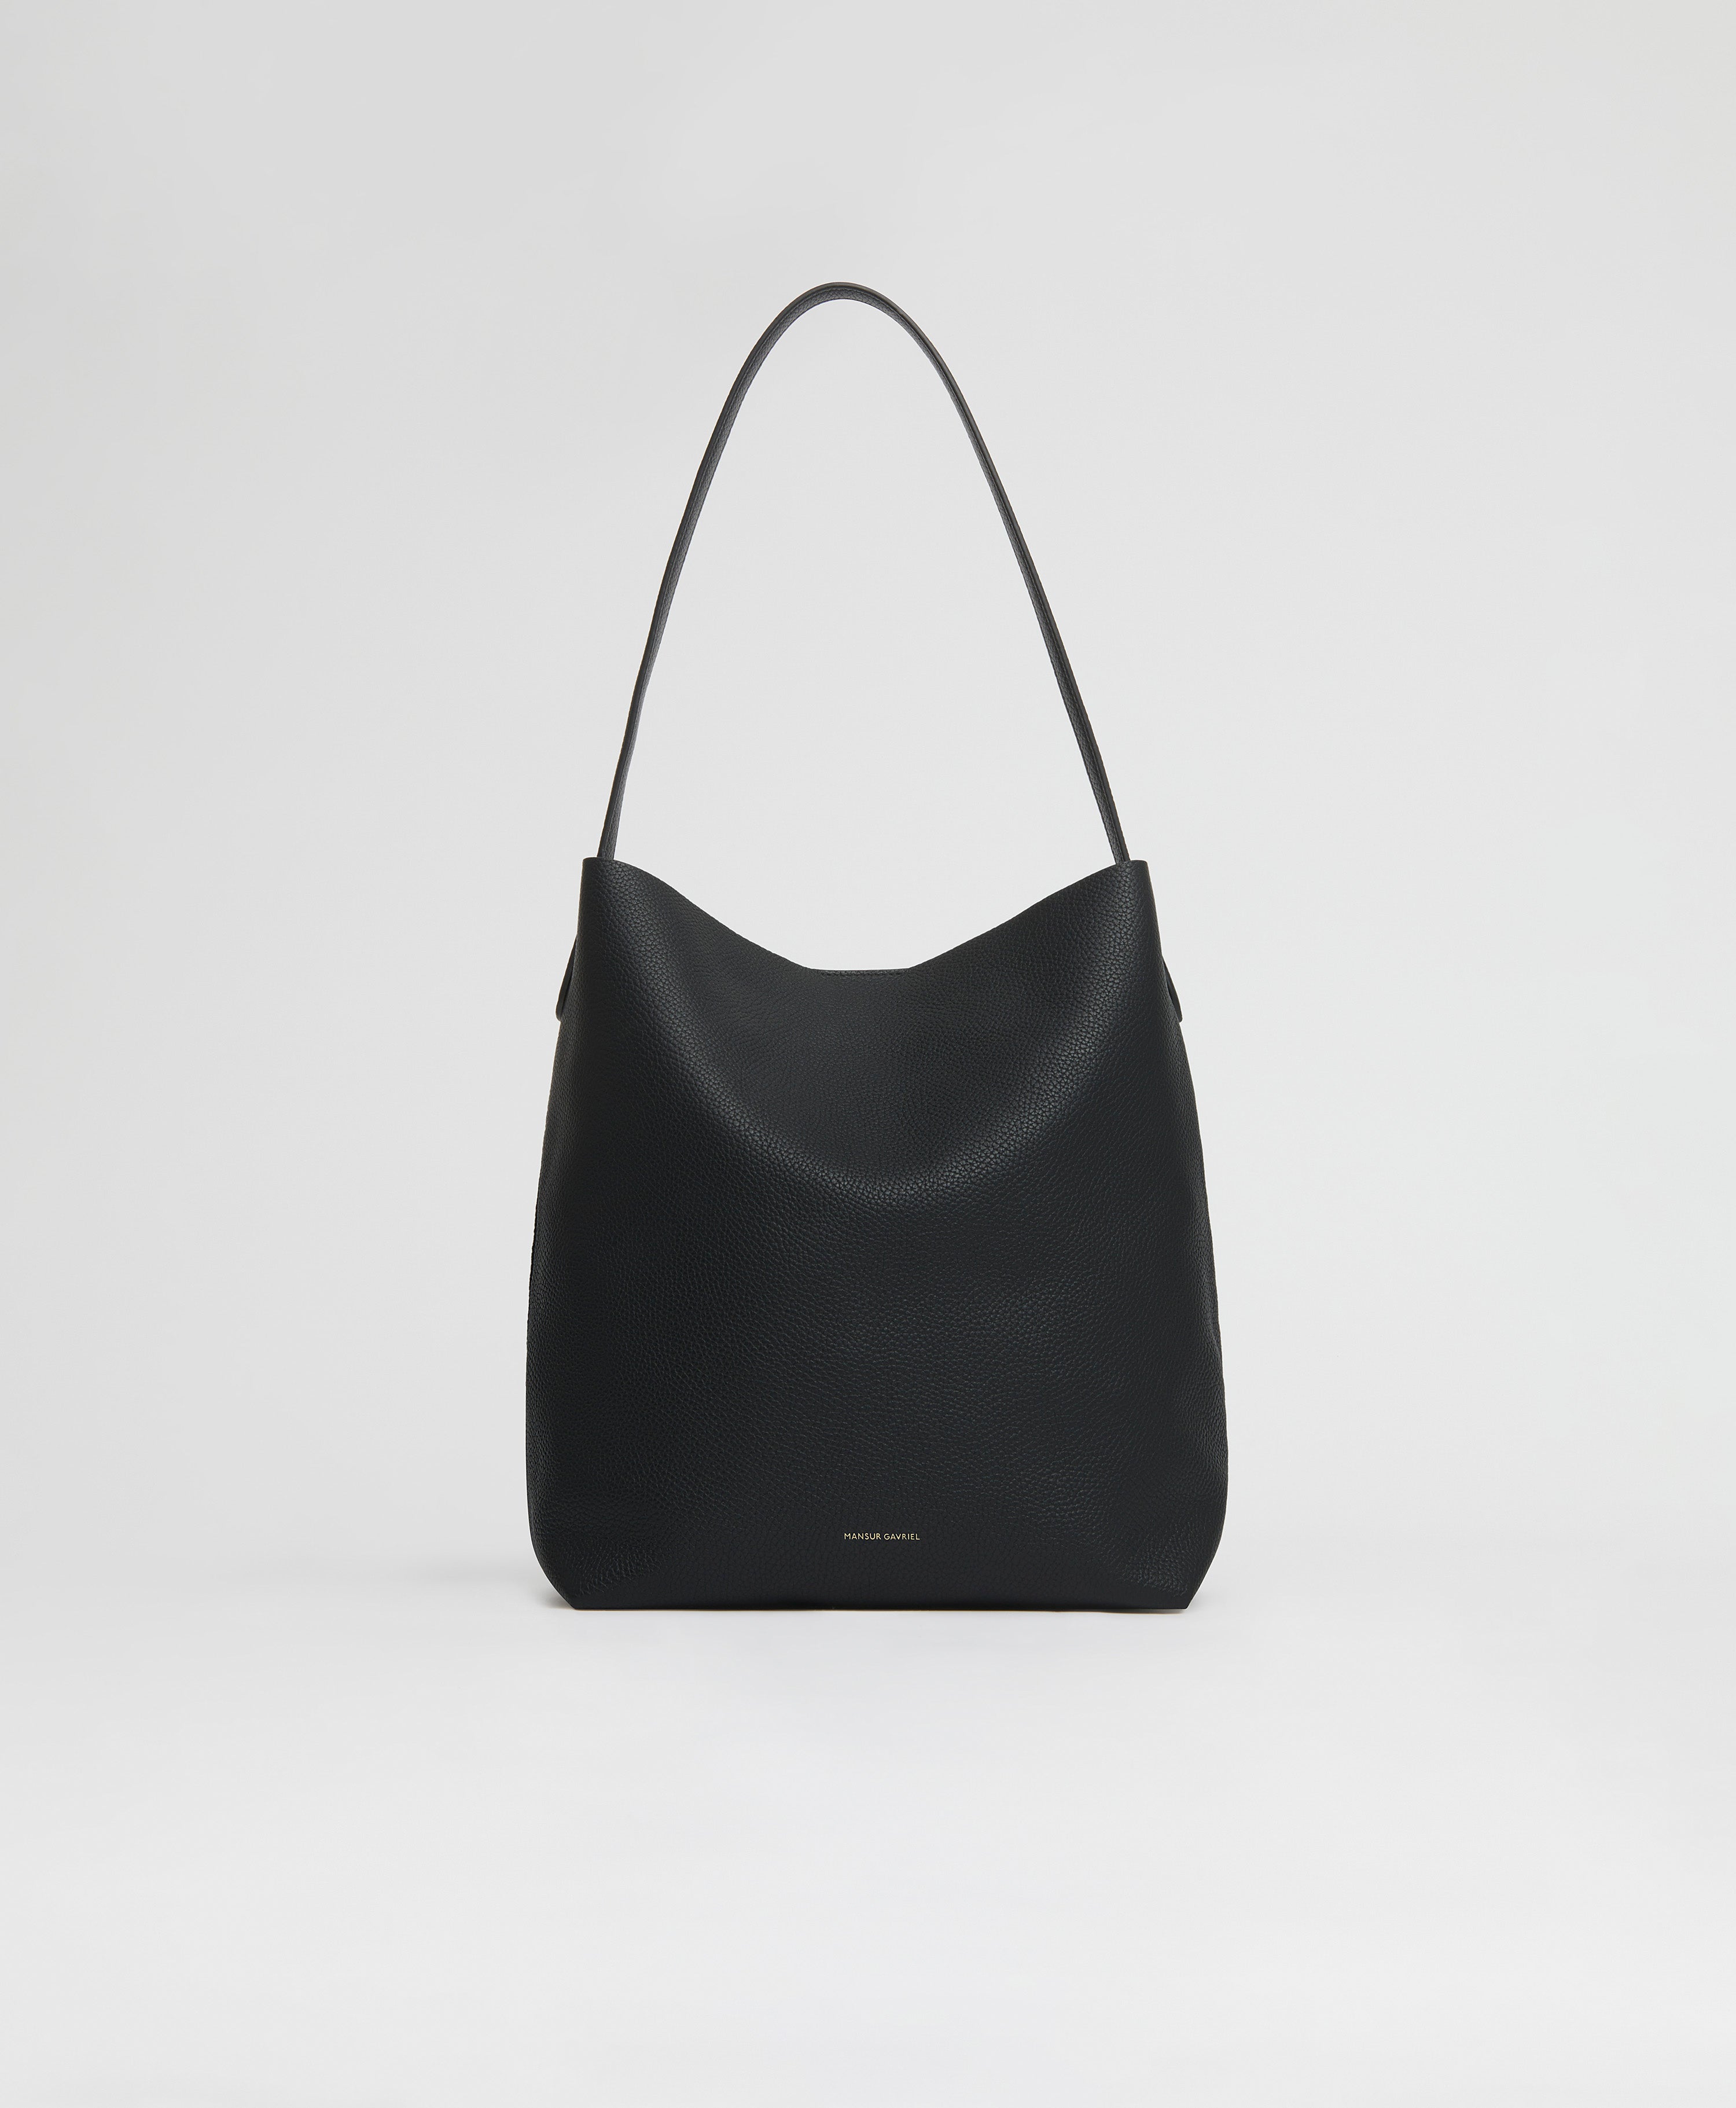 Black-Owned Handbag Brands | Black Designer Brands